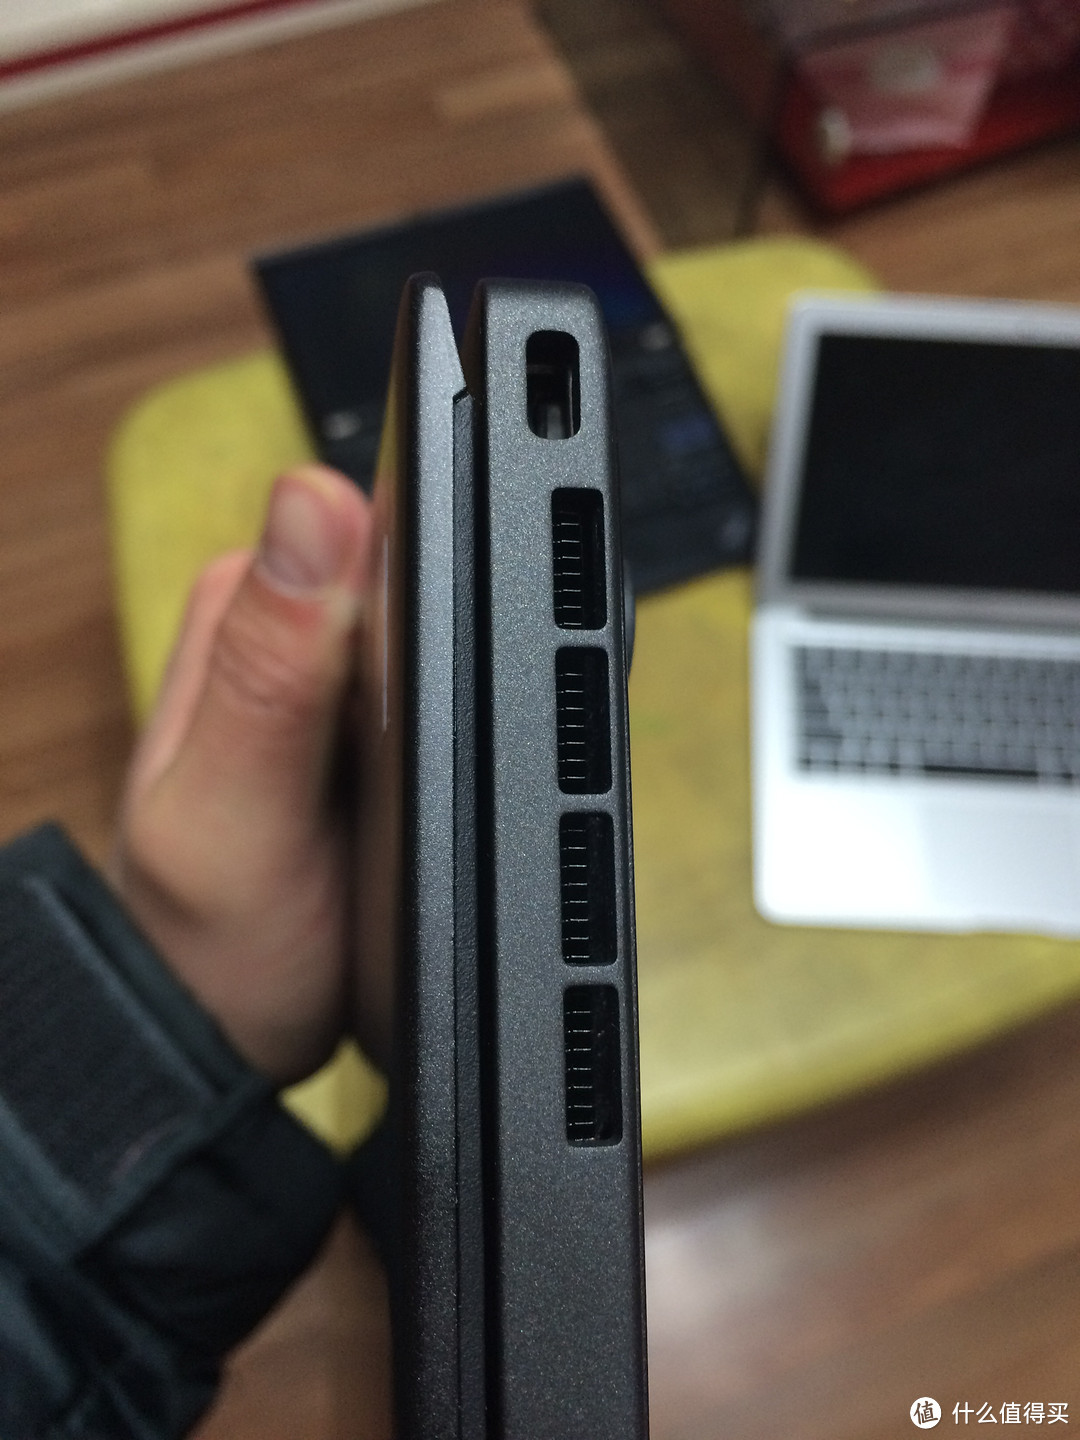 日本联想官网入手ThinkPad X1 CARBON 购入记